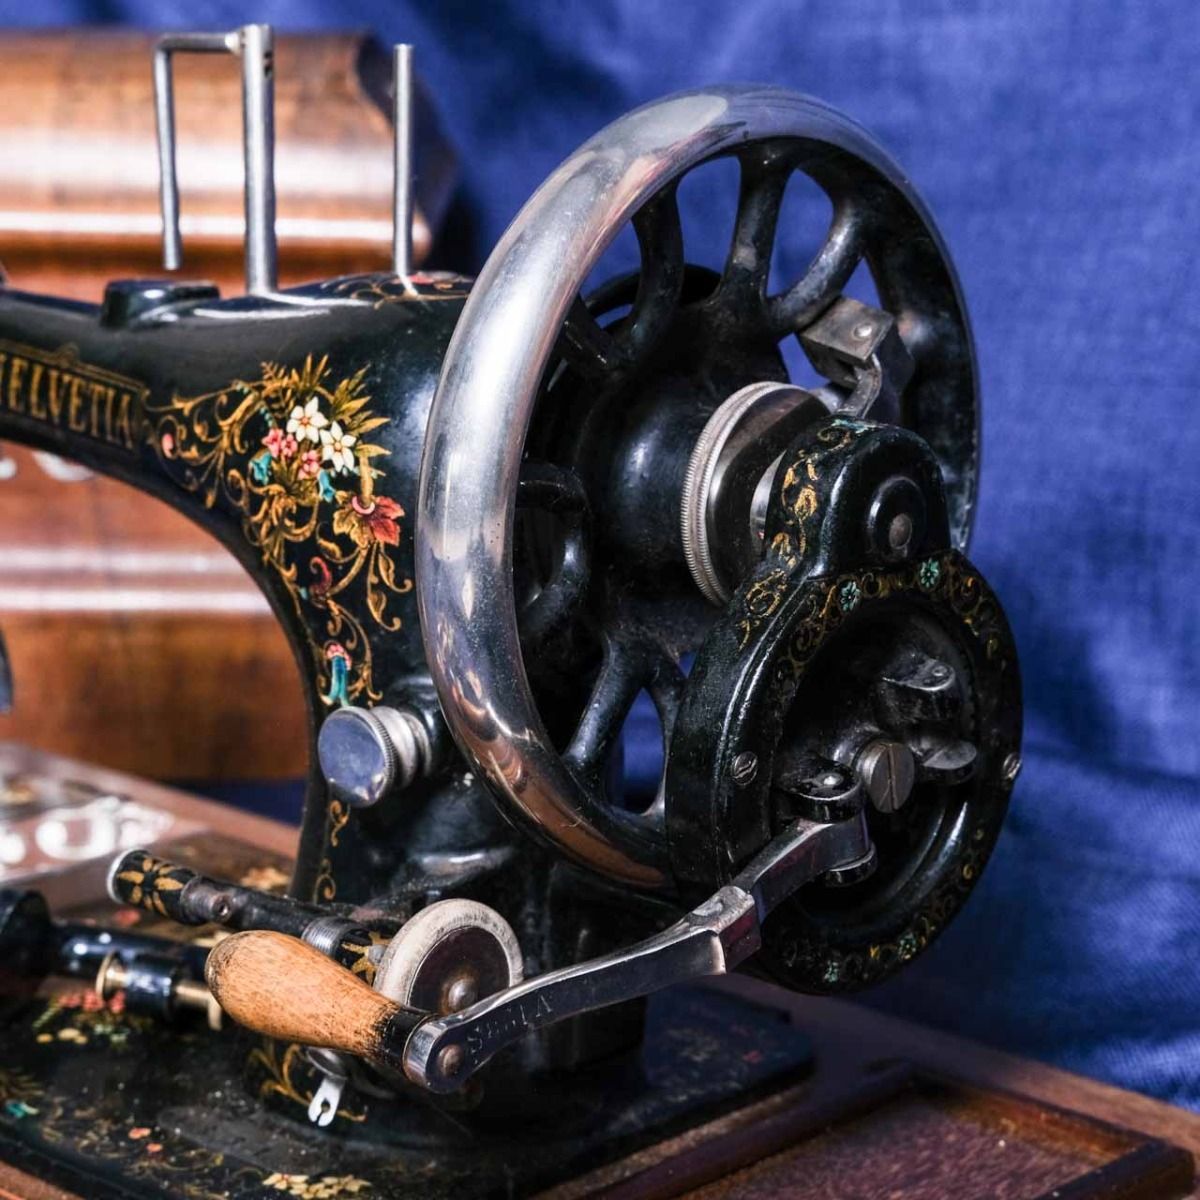 Helvetia Brand Sewing Machine